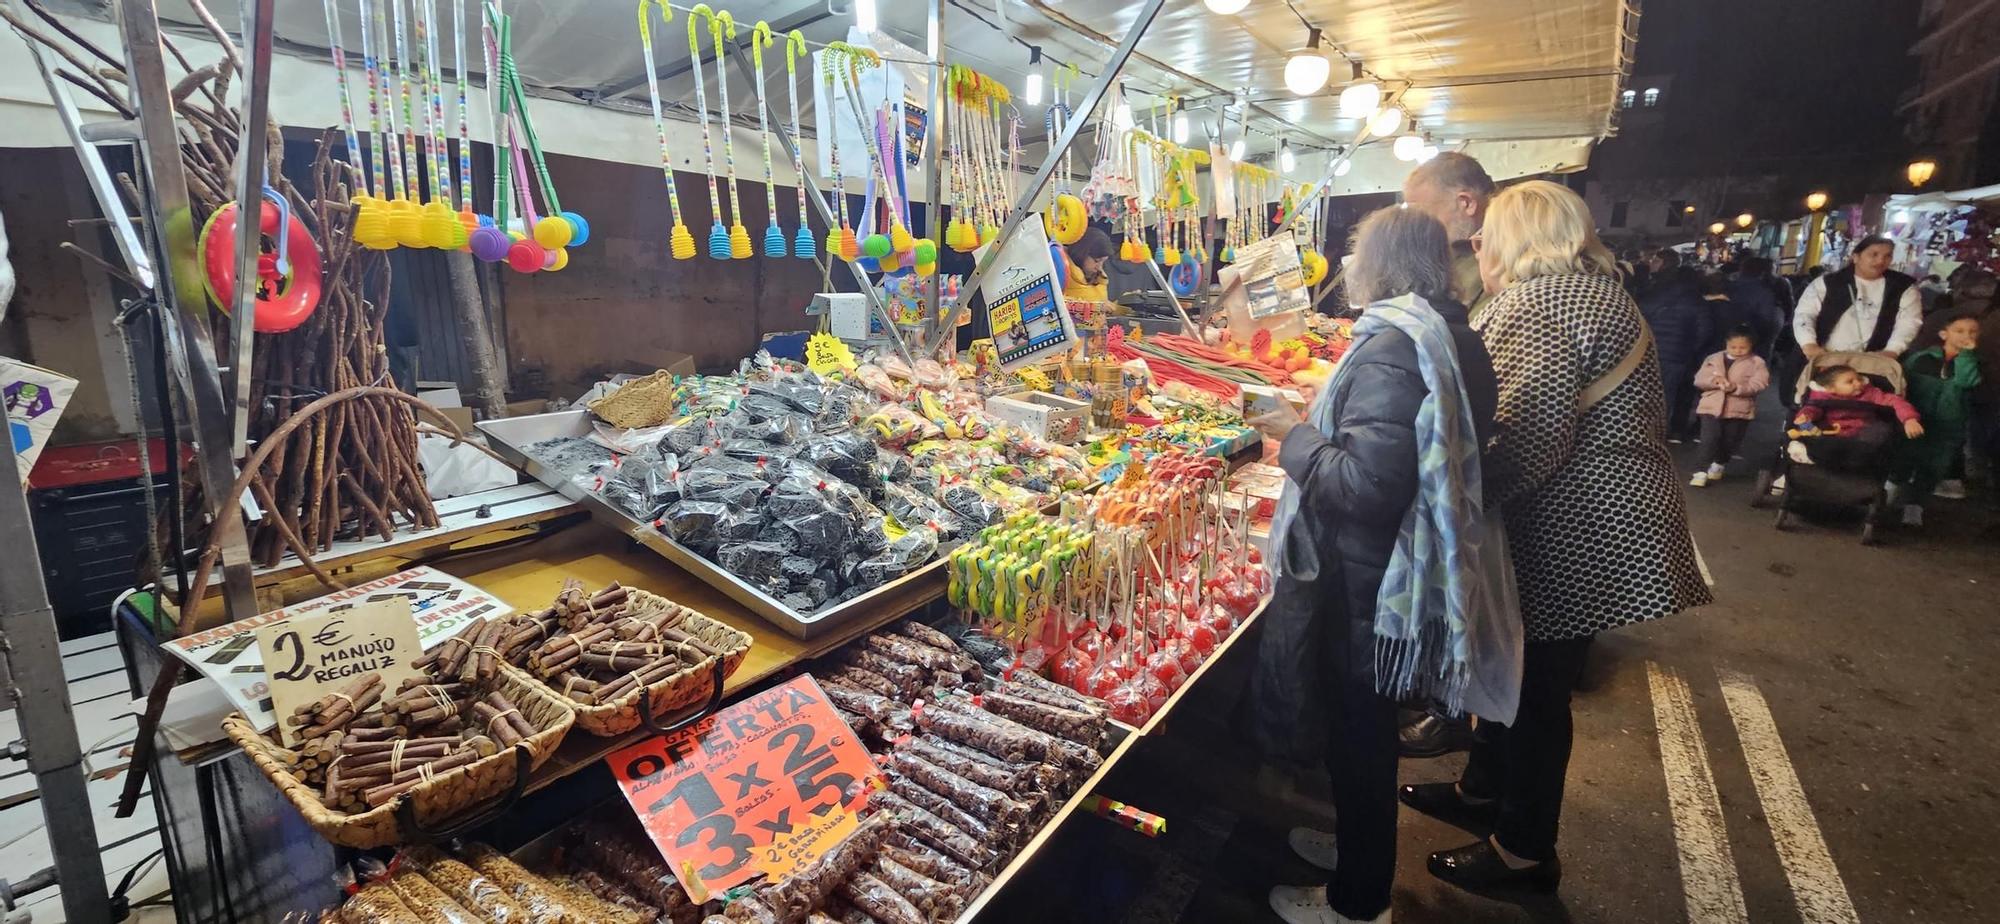 Así es el mercado de Reyes Magos en las noches del Cabanyal